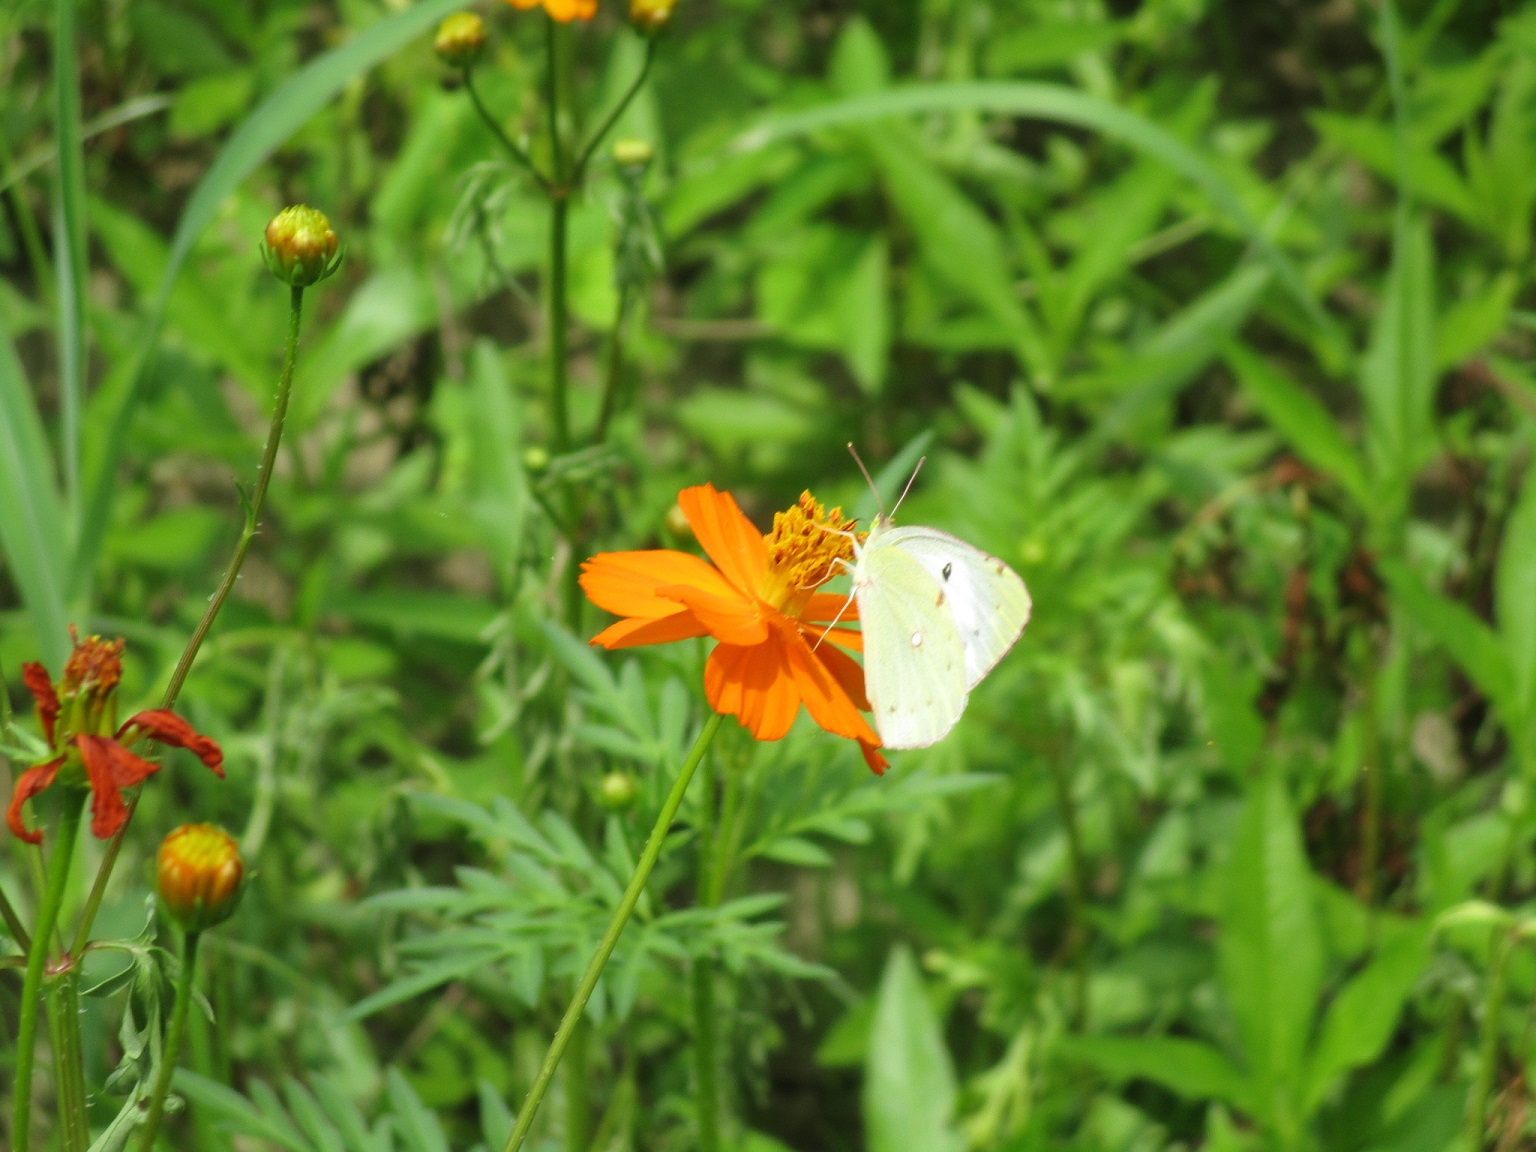 蝶がオレンジ色の花の蜜を吸っている、7月26日のキバナコスモス(夏ゾーン)の様子